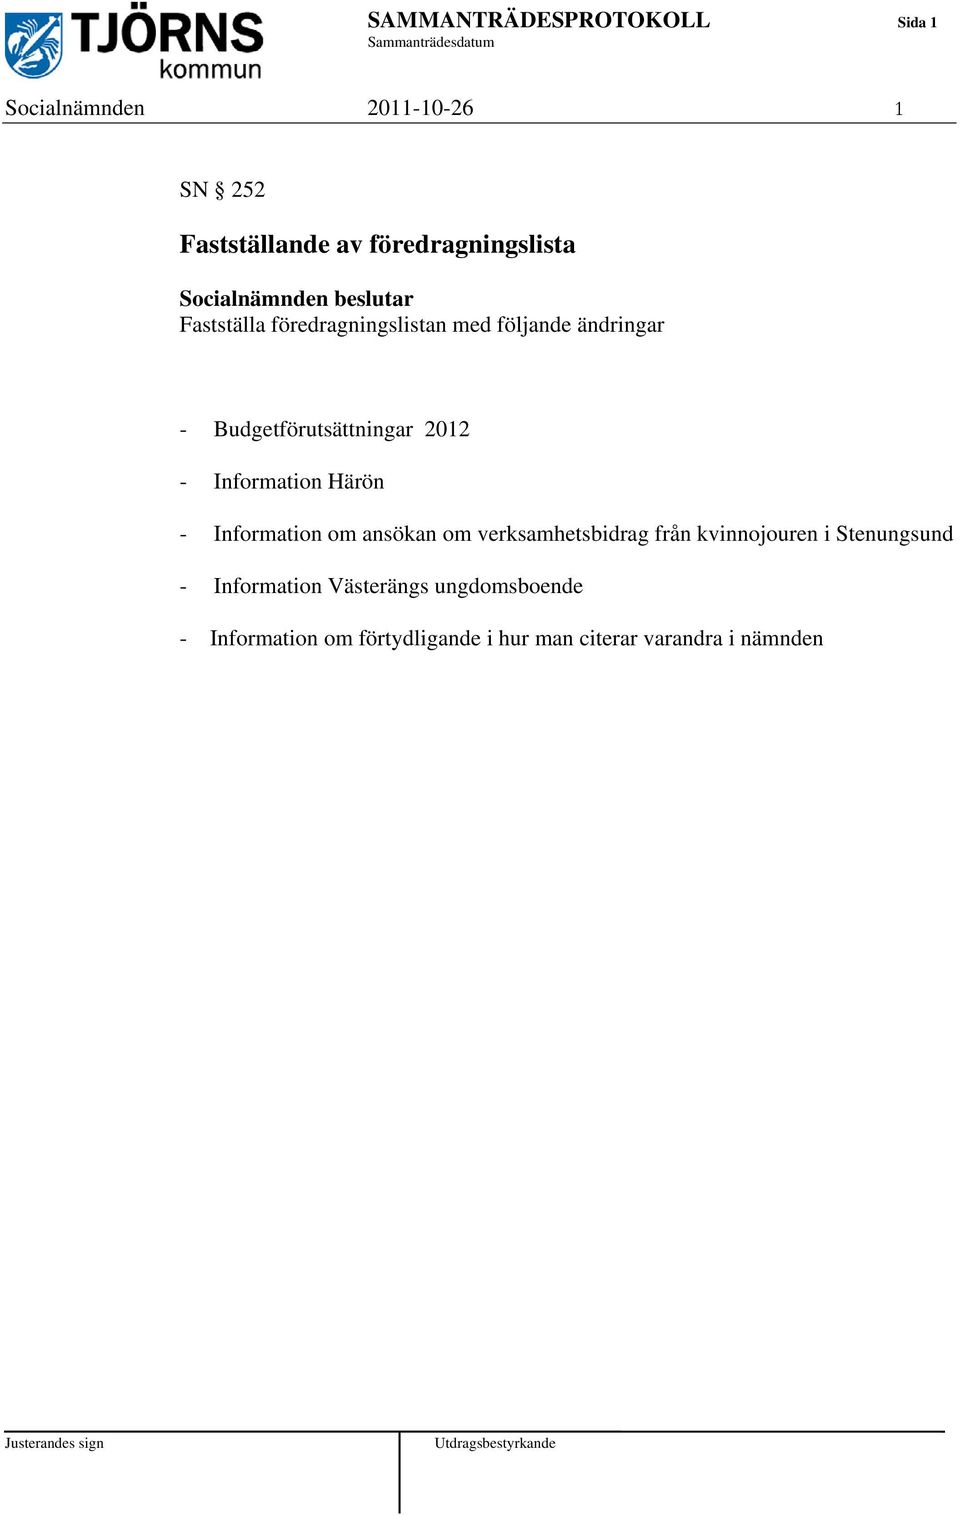 2012 - Information Härön - Information om ansökan om verksamhetsbidrag från kvinnojouren i Stenungsund